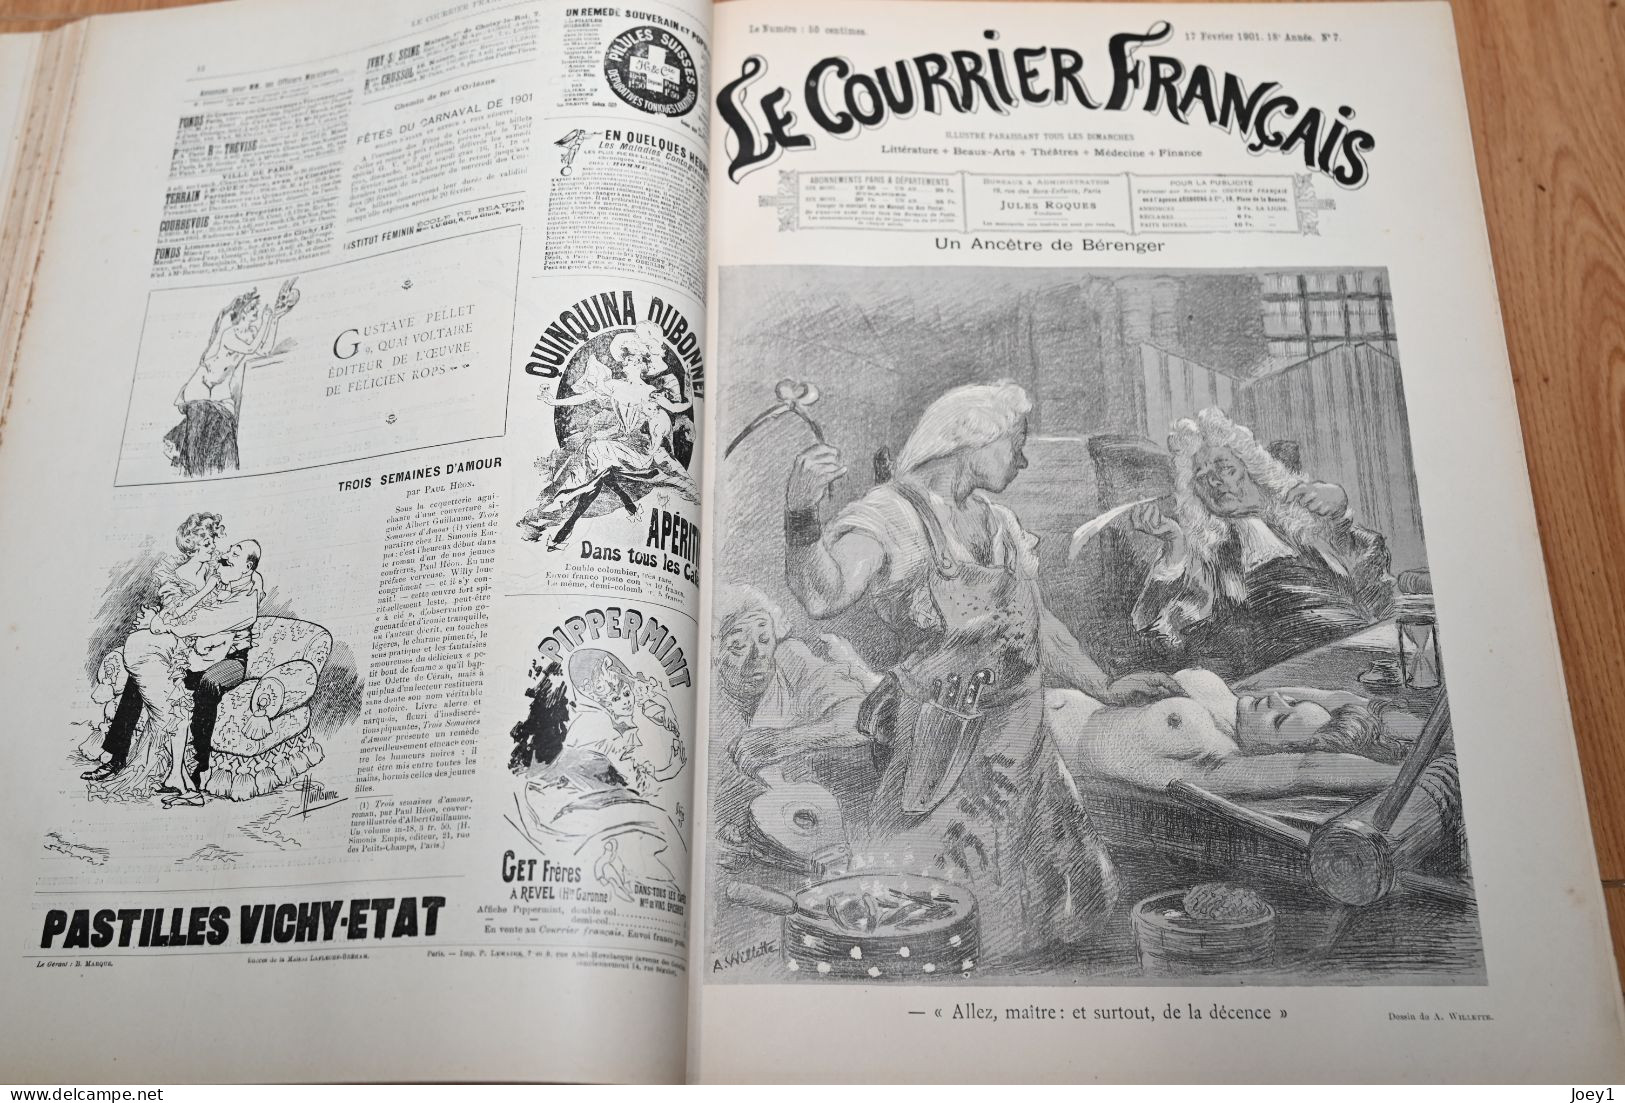 Le Courrier Français  relié du 6 Janvier 1901 au 29 Décembre 1901 très bon état